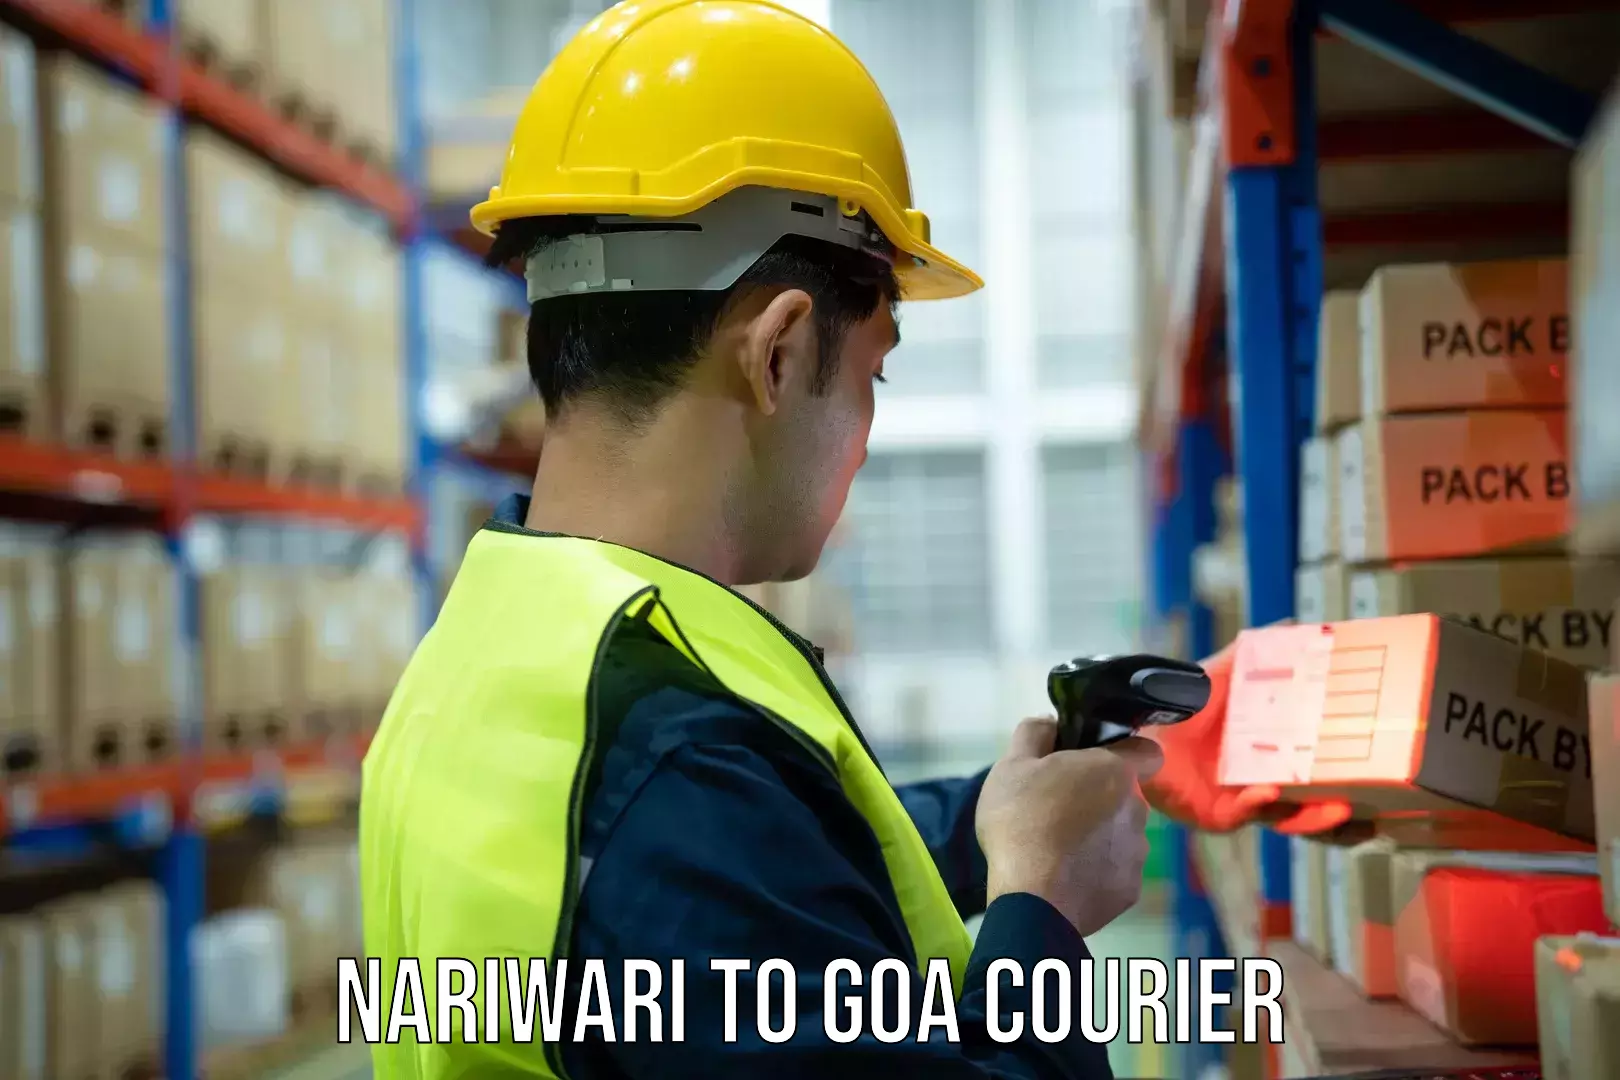 Cargo courier service Nariwari to South Goa